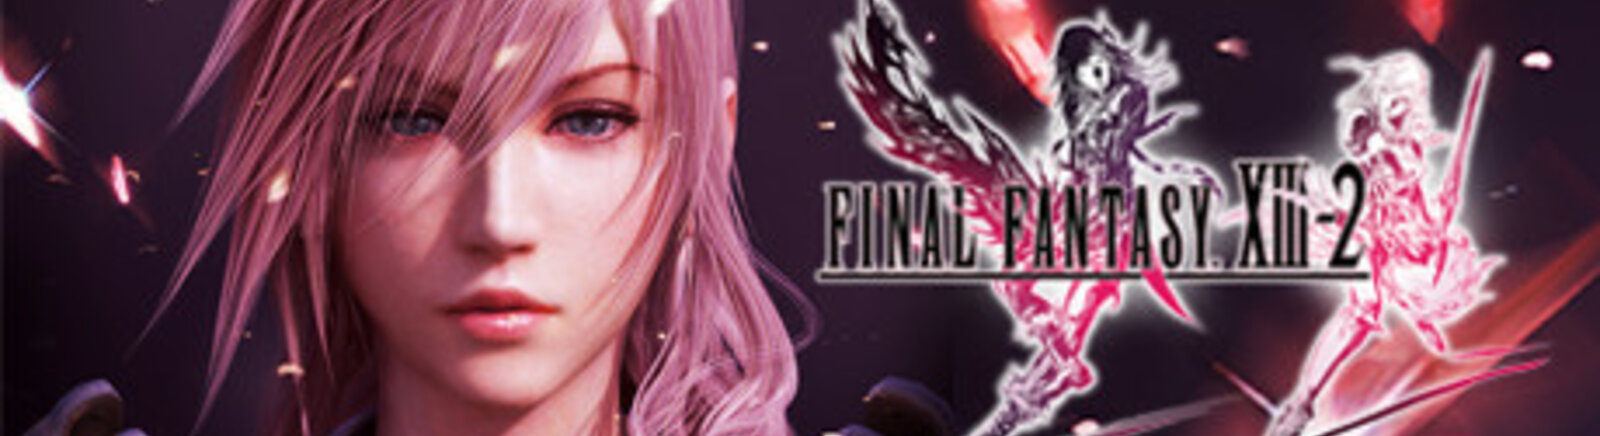 Дата выхода Final Fantasy XIII-2 (FF13-2)  на PC, PS3 и Xbox 360 в России и во всем мире